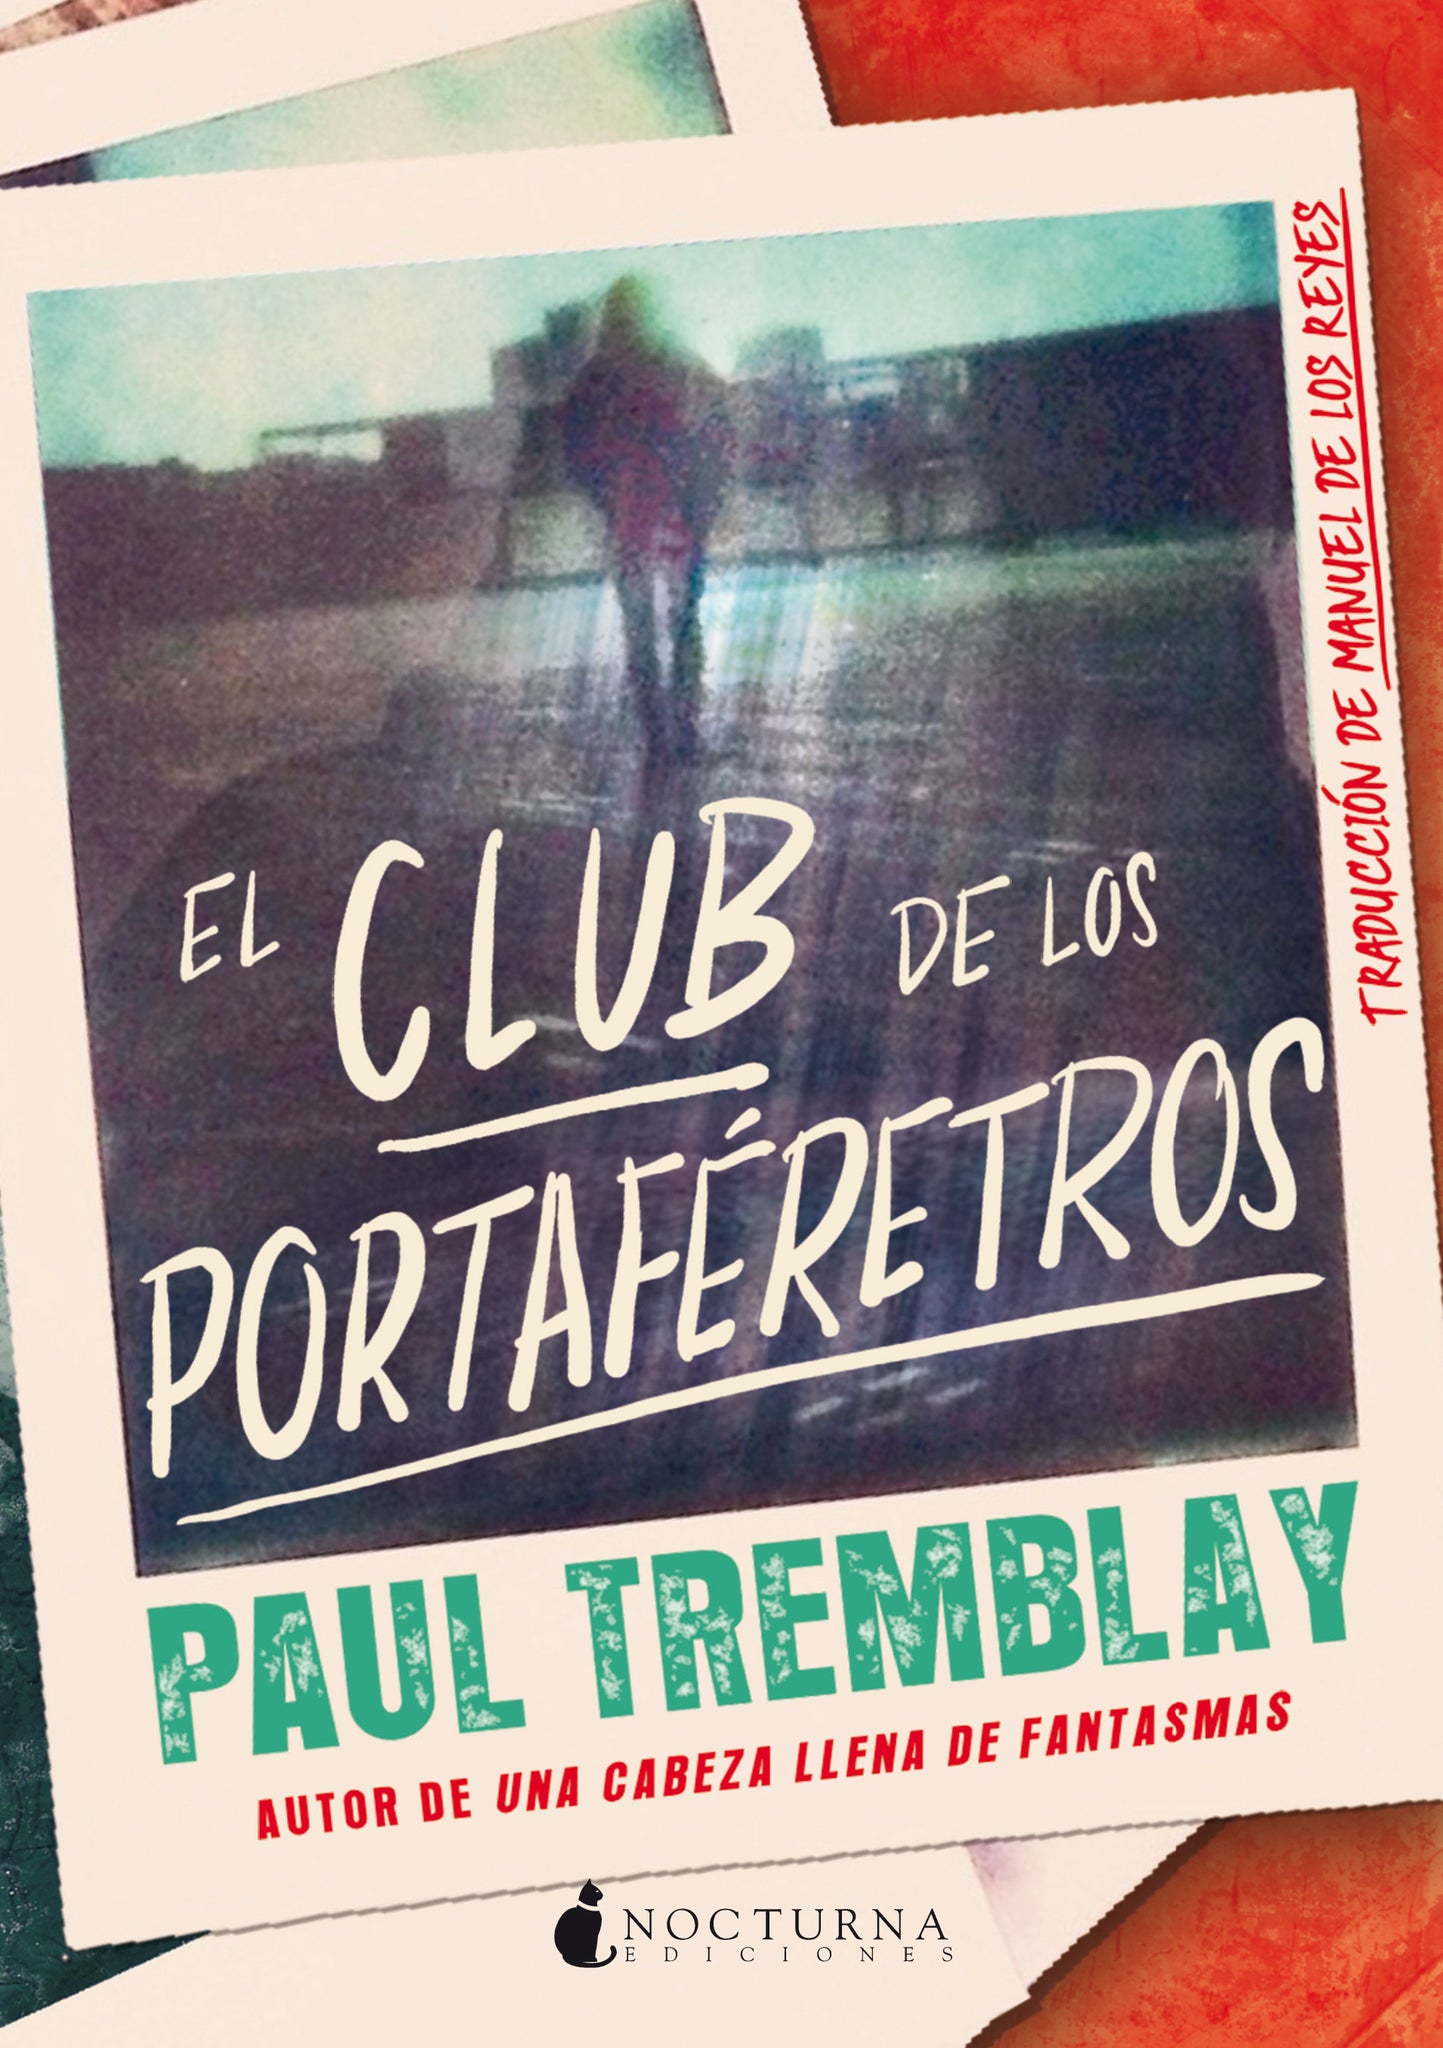 El Club de los Portaféretros (Paul Tremblay)